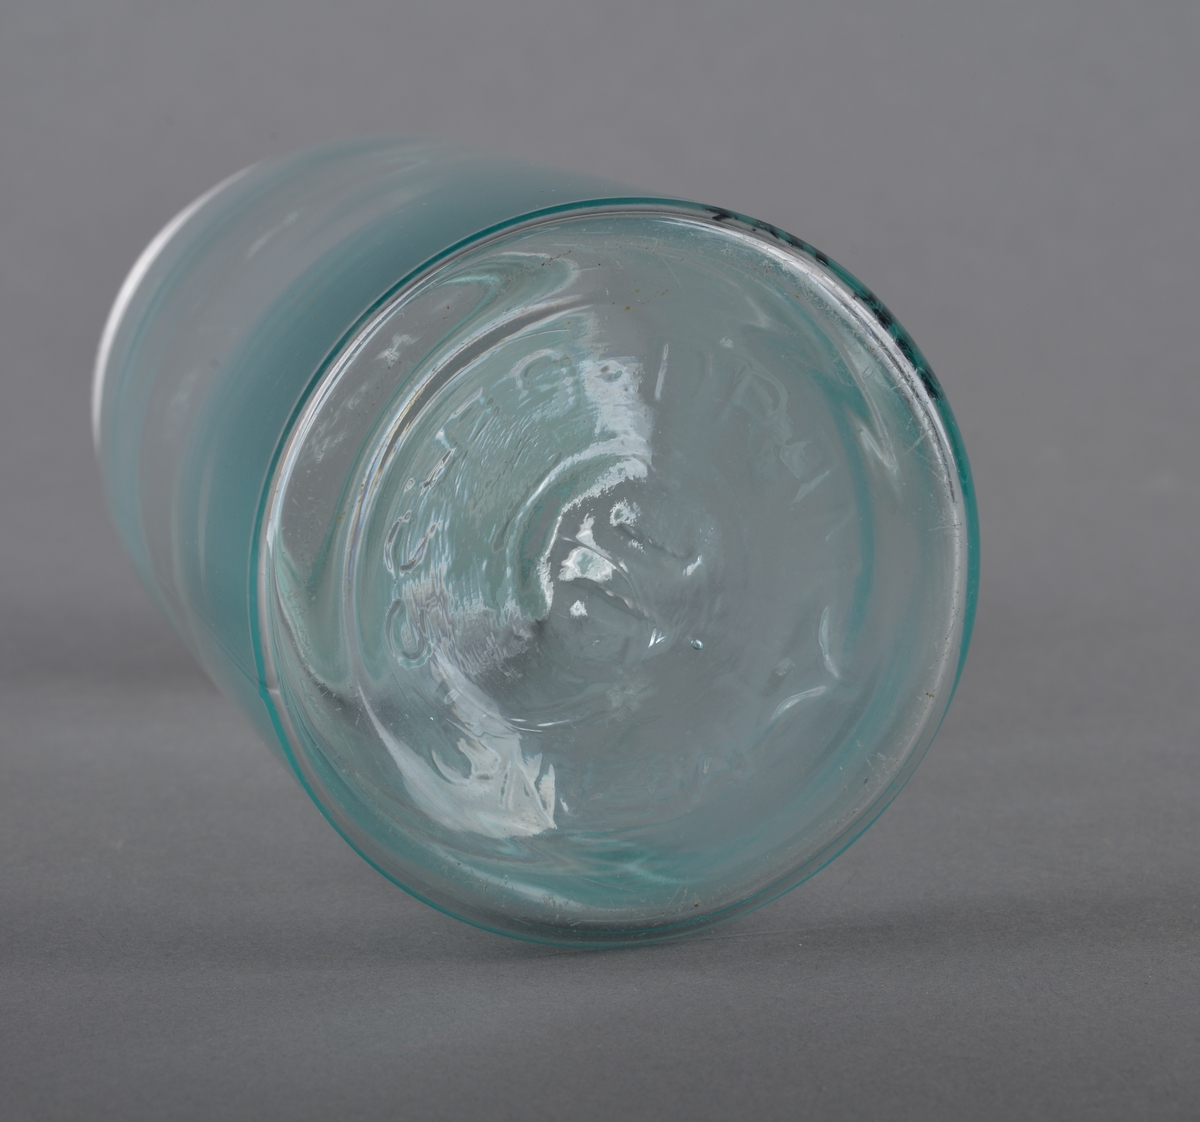 Sylindrisk glassbeholder med glasslokk som har gjenget metallring. Glasset er gjennomsiktig.